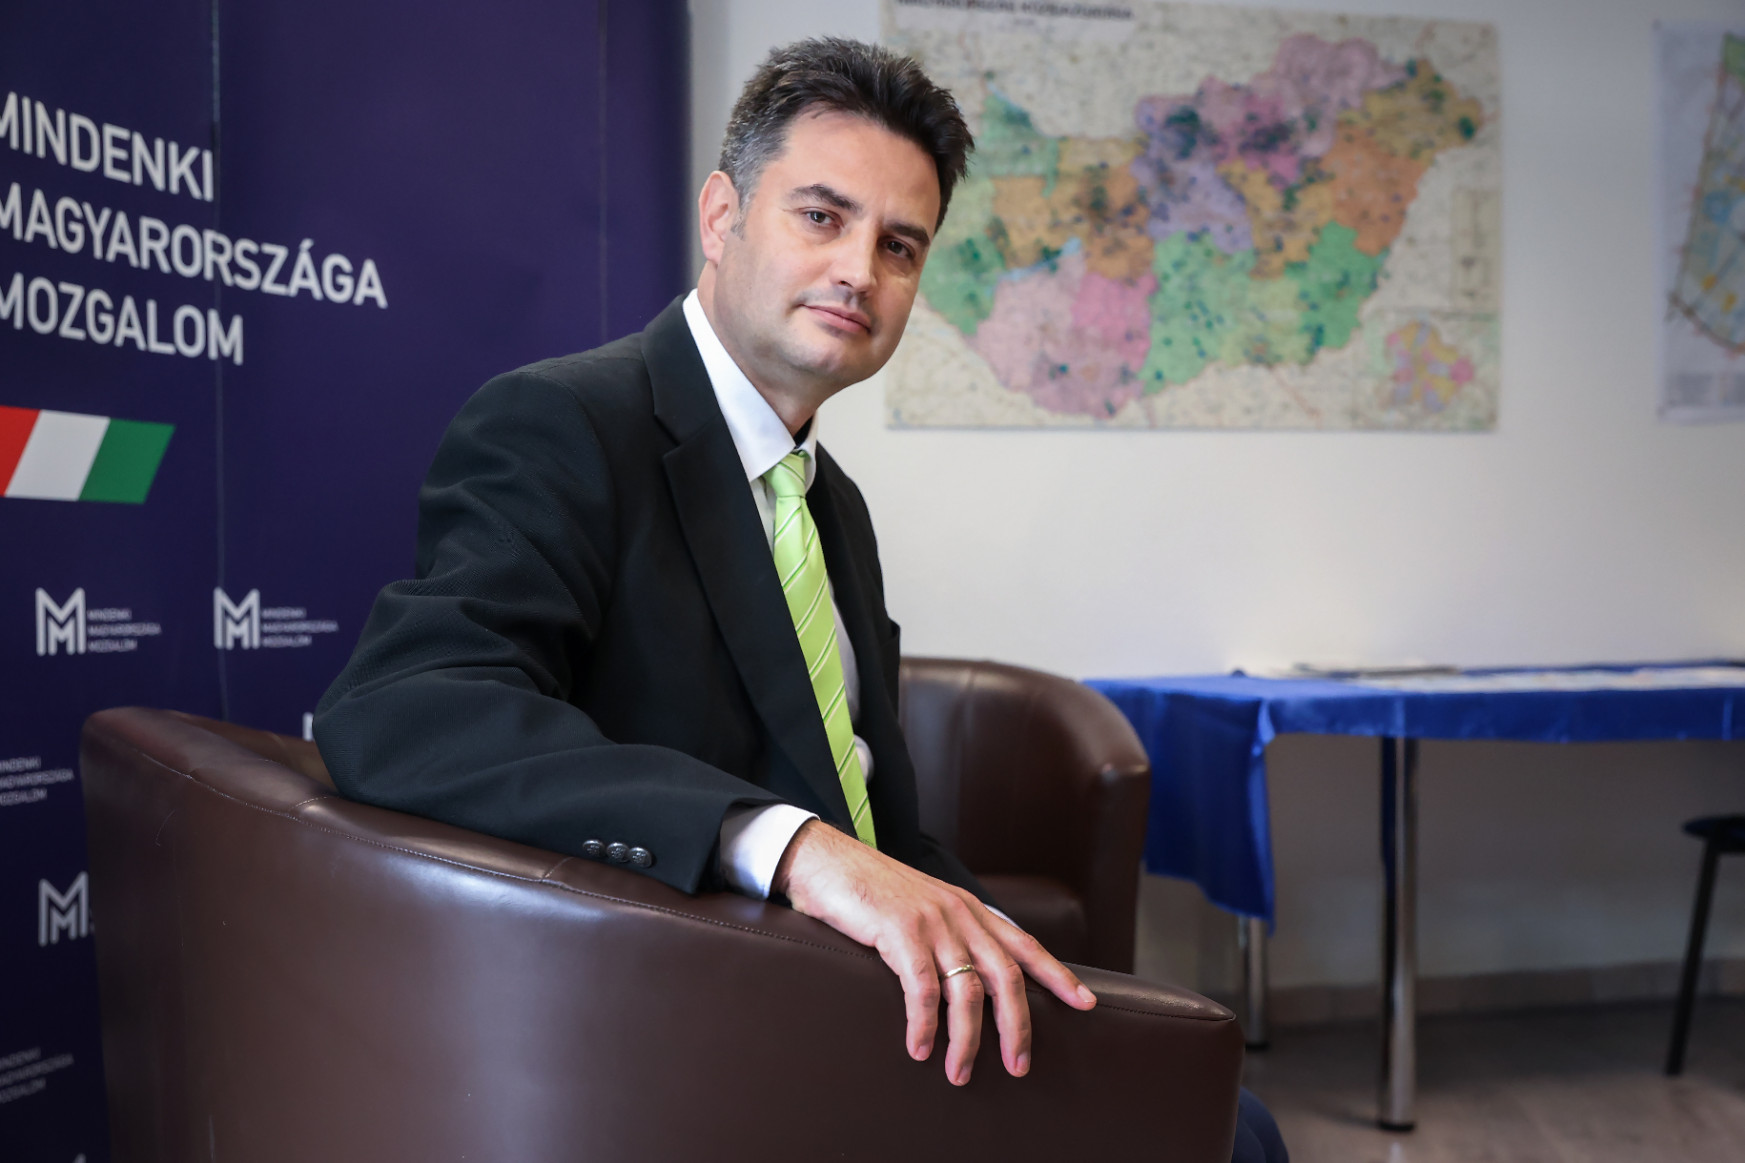 Több olyan ellenzéki városvezetőről tudunk, akiket a Fidesz meg tudott venni